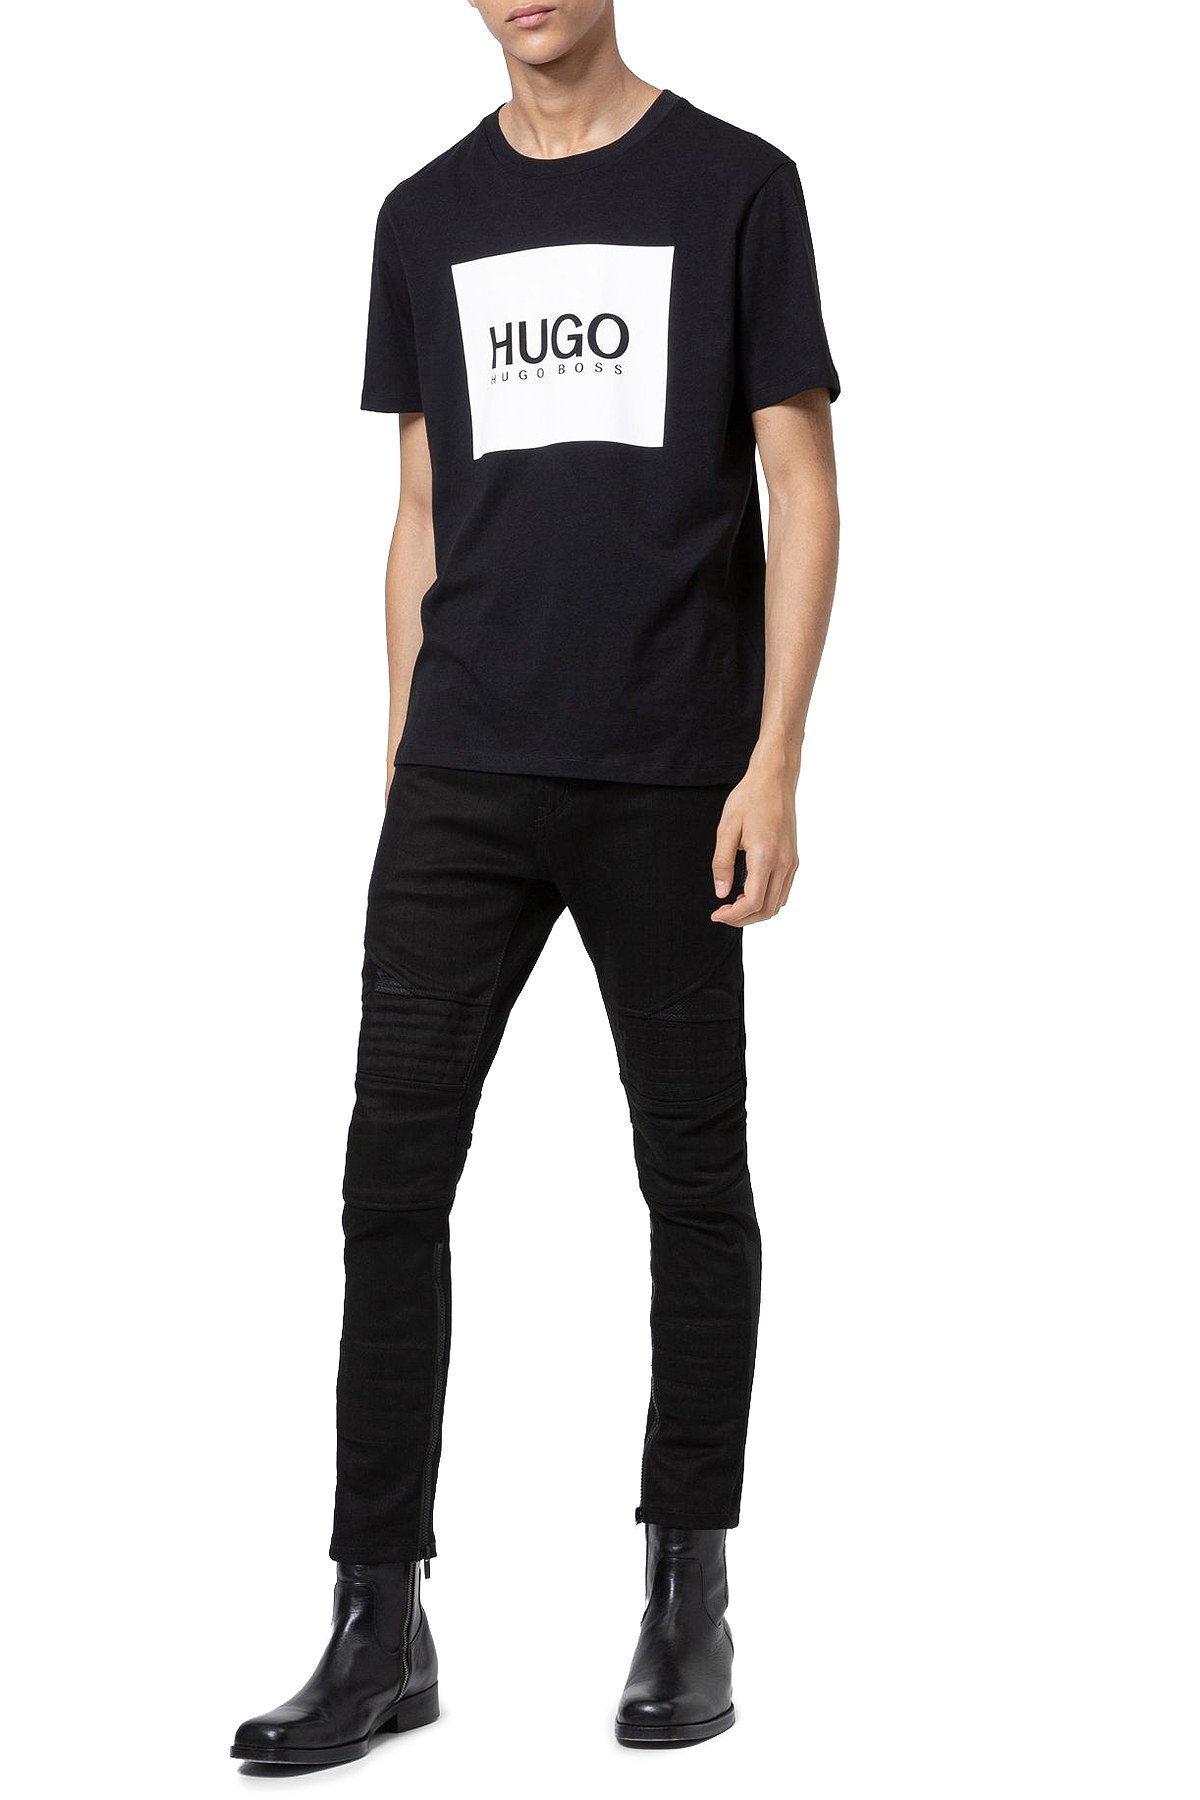 Hugo Boss % 100 Pamuklu Bisiklet Yaka Erkek T Shirt 50448795 001 SİYAH